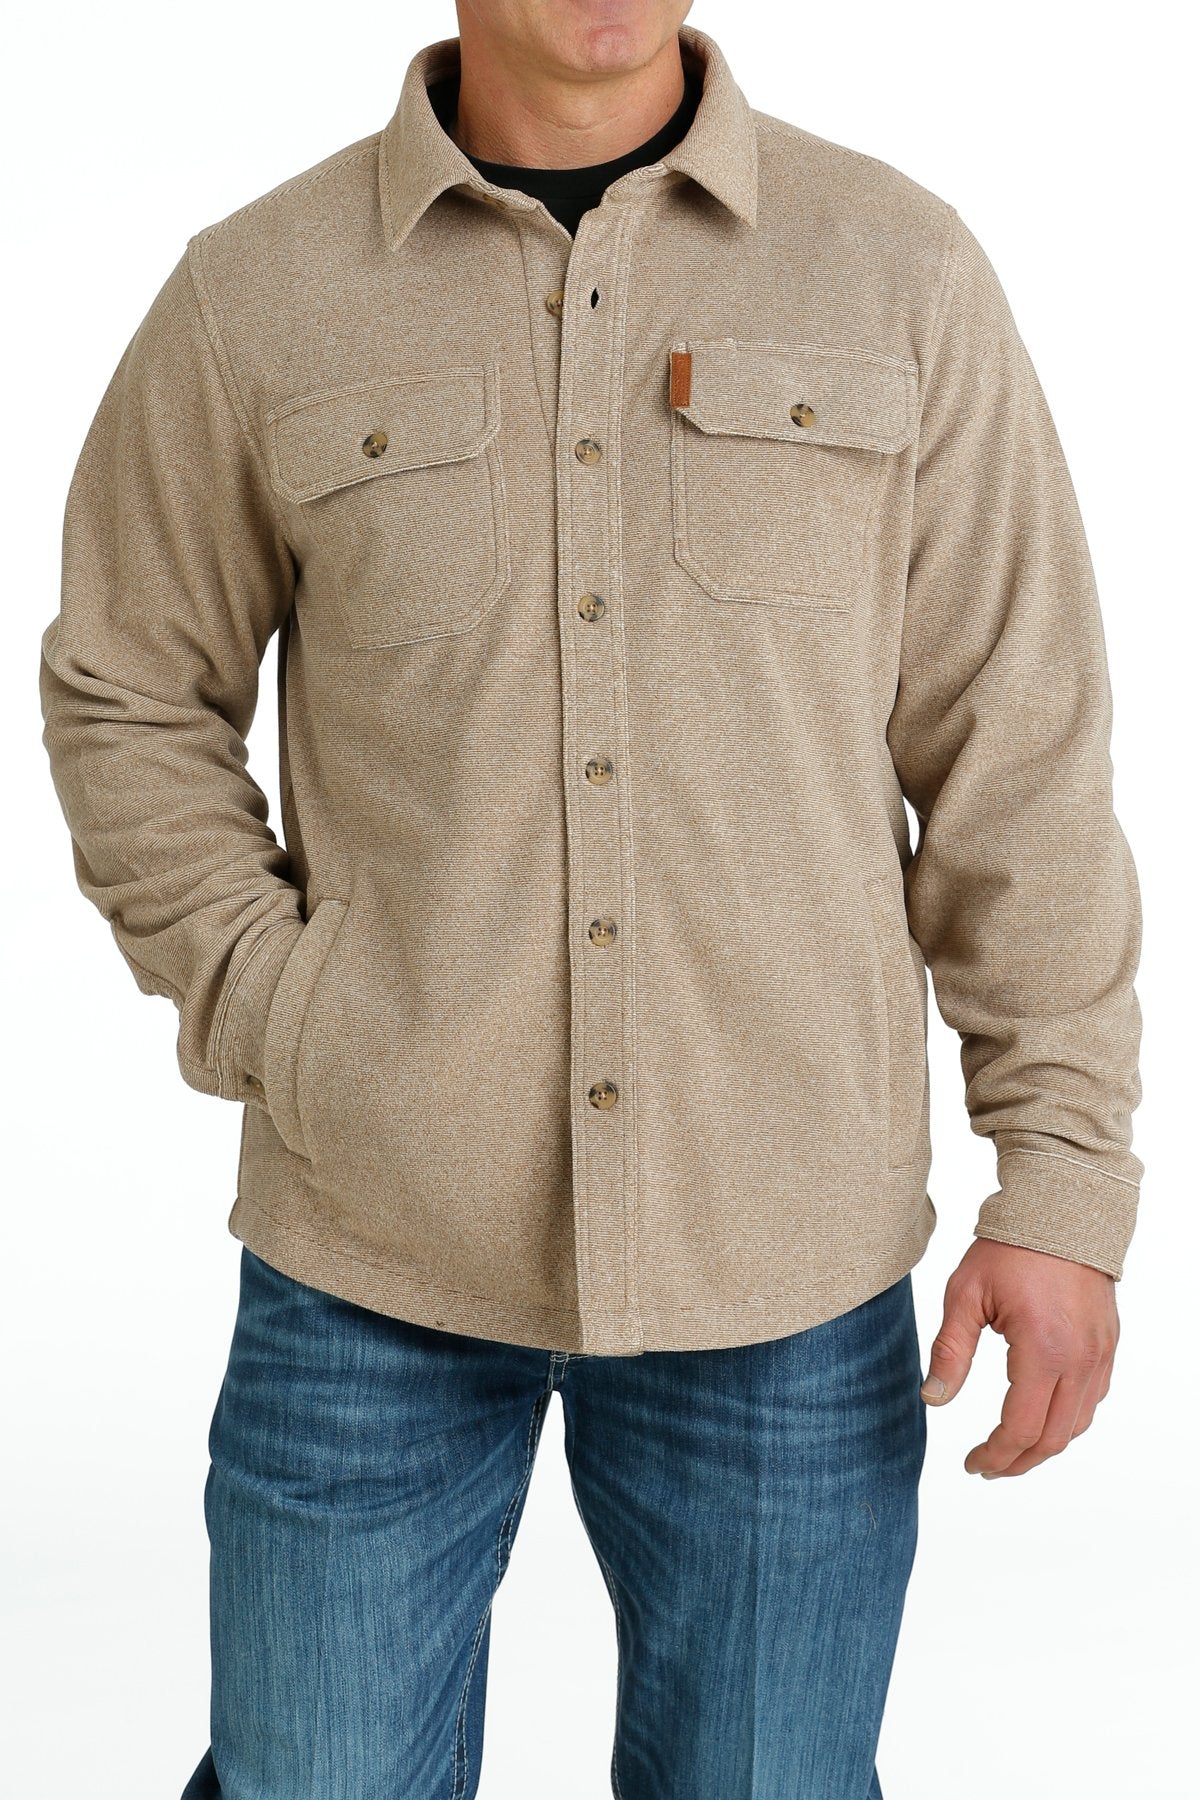 Men's Polar Fleece Shirt Jacket